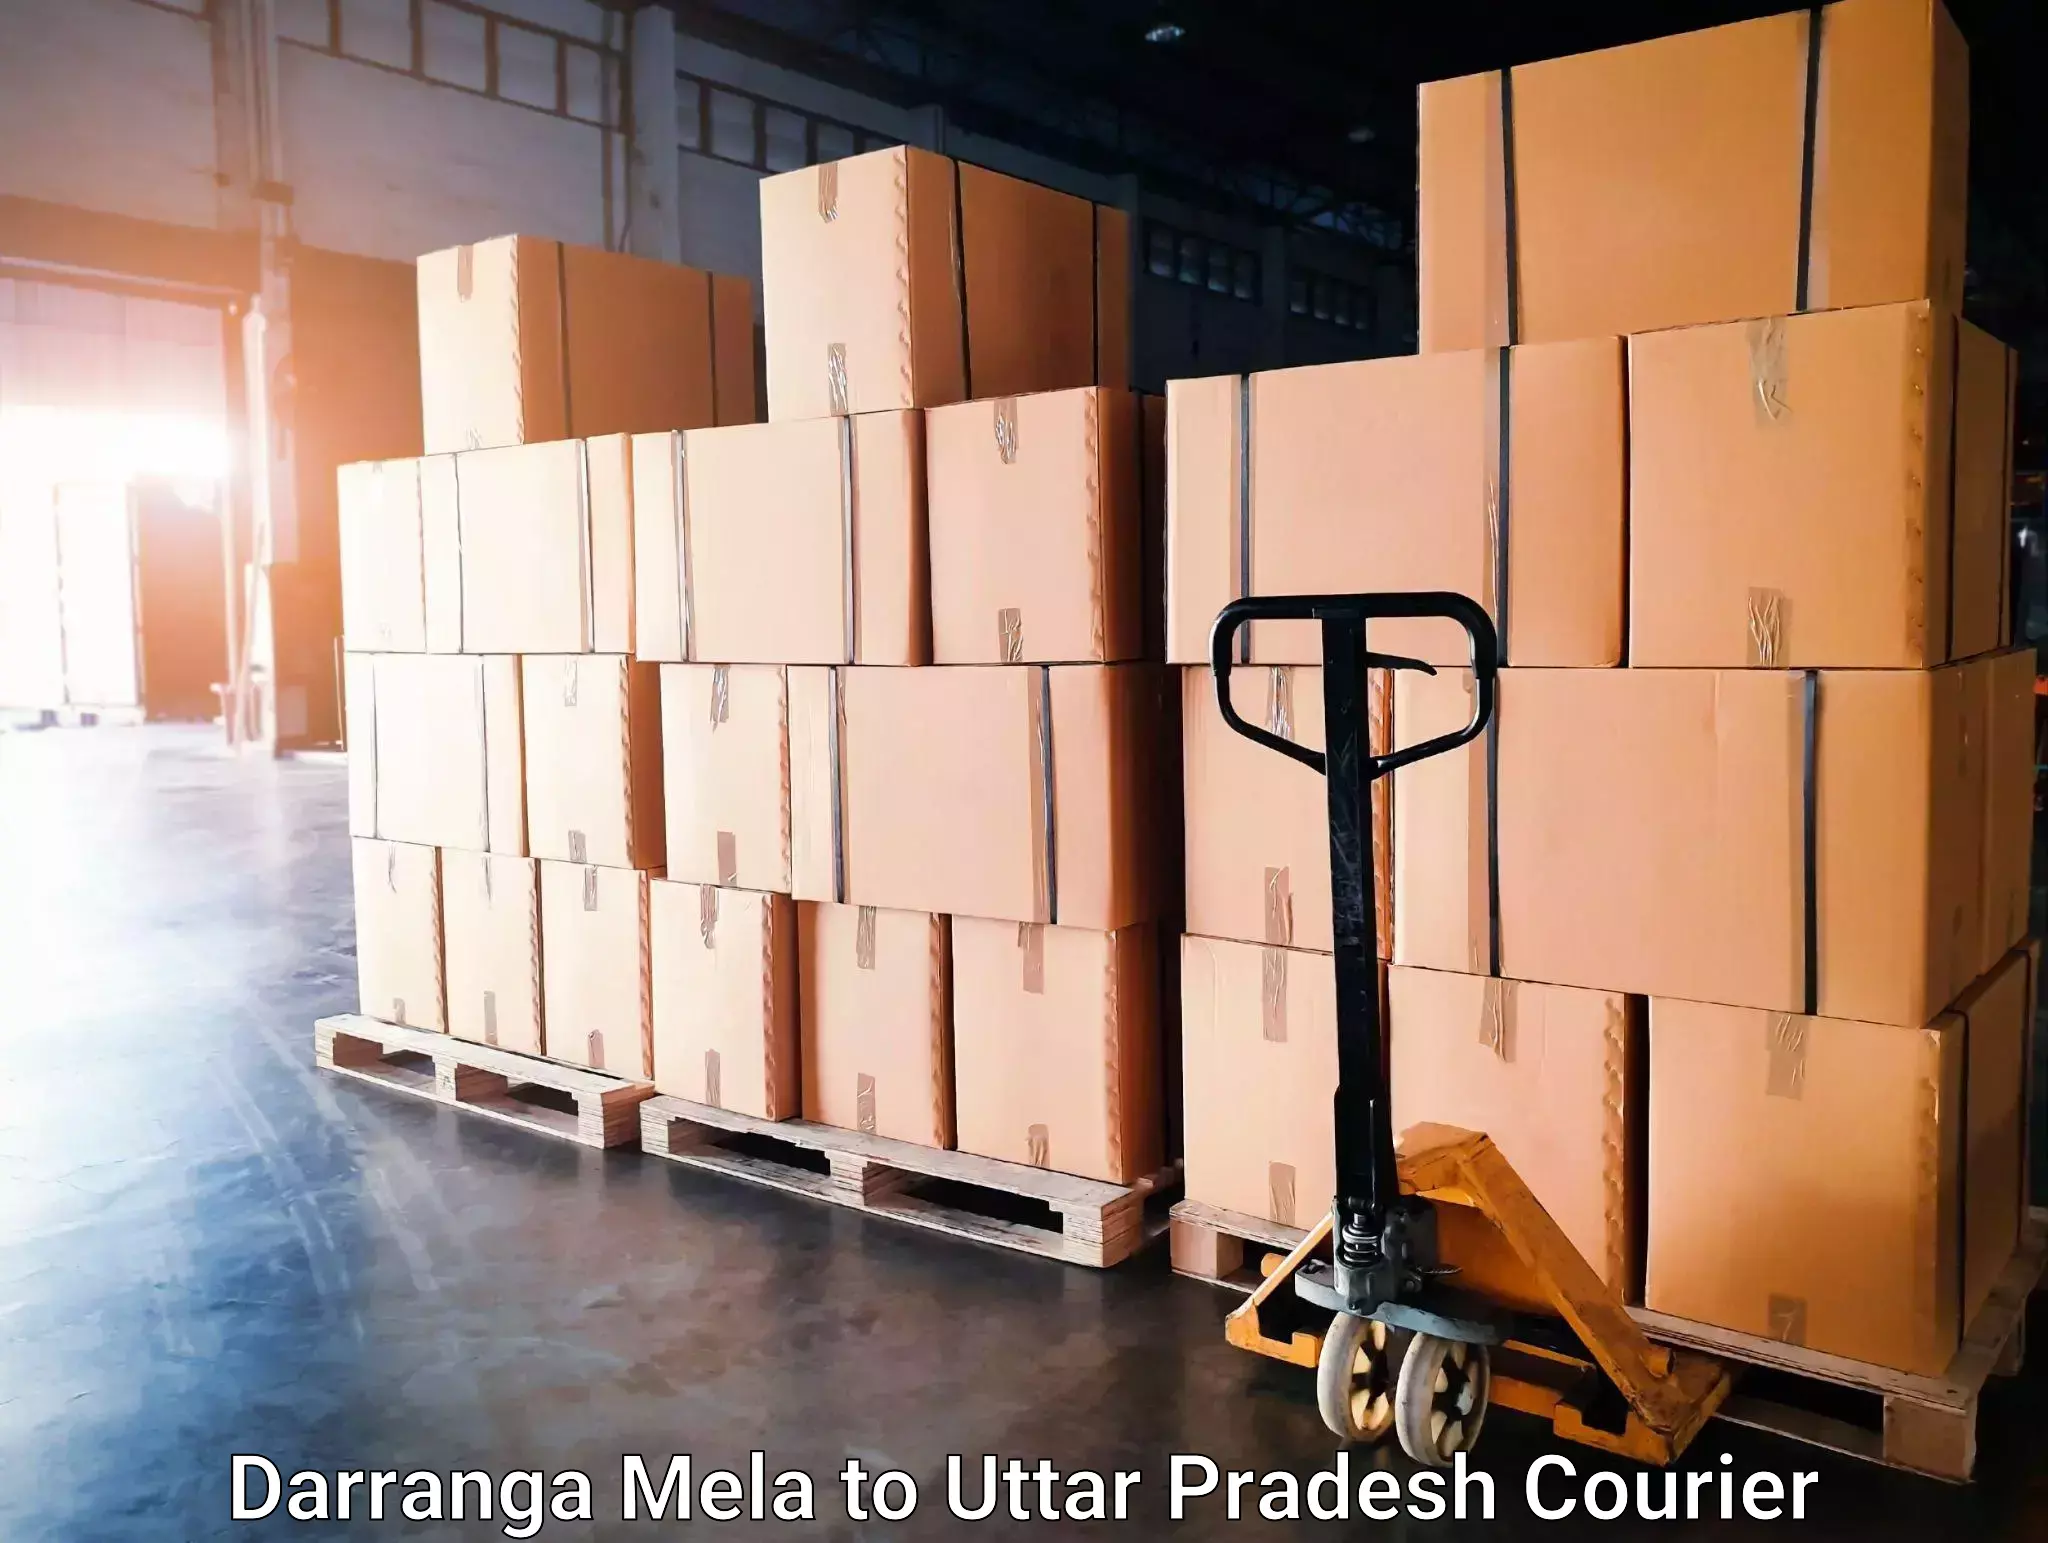 User-friendly courier app Darranga Mela to Madhoganj